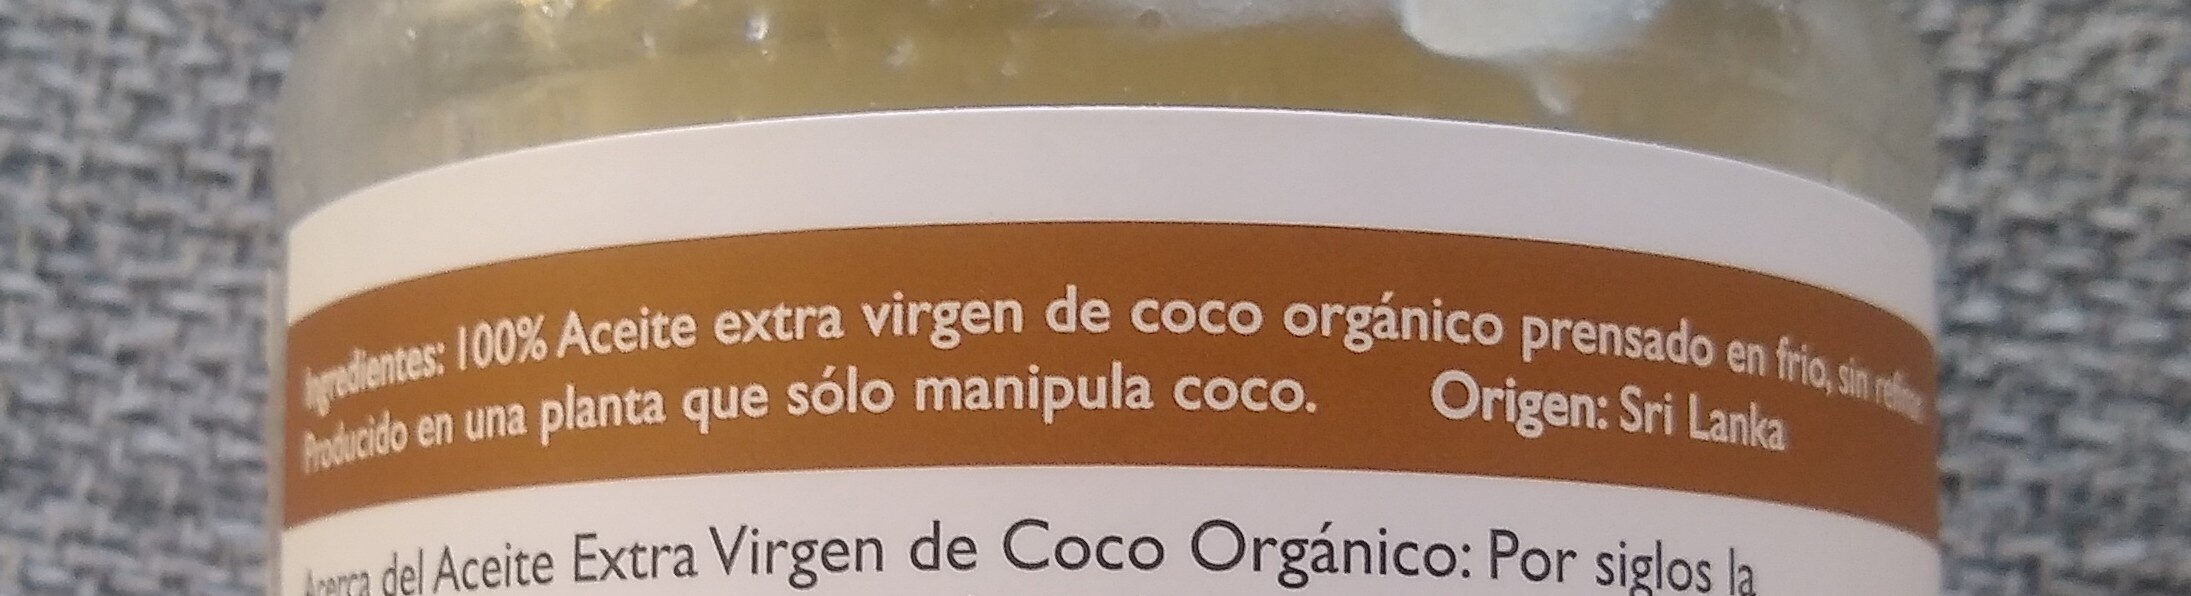 Aceite de Coco - Ingredients - es